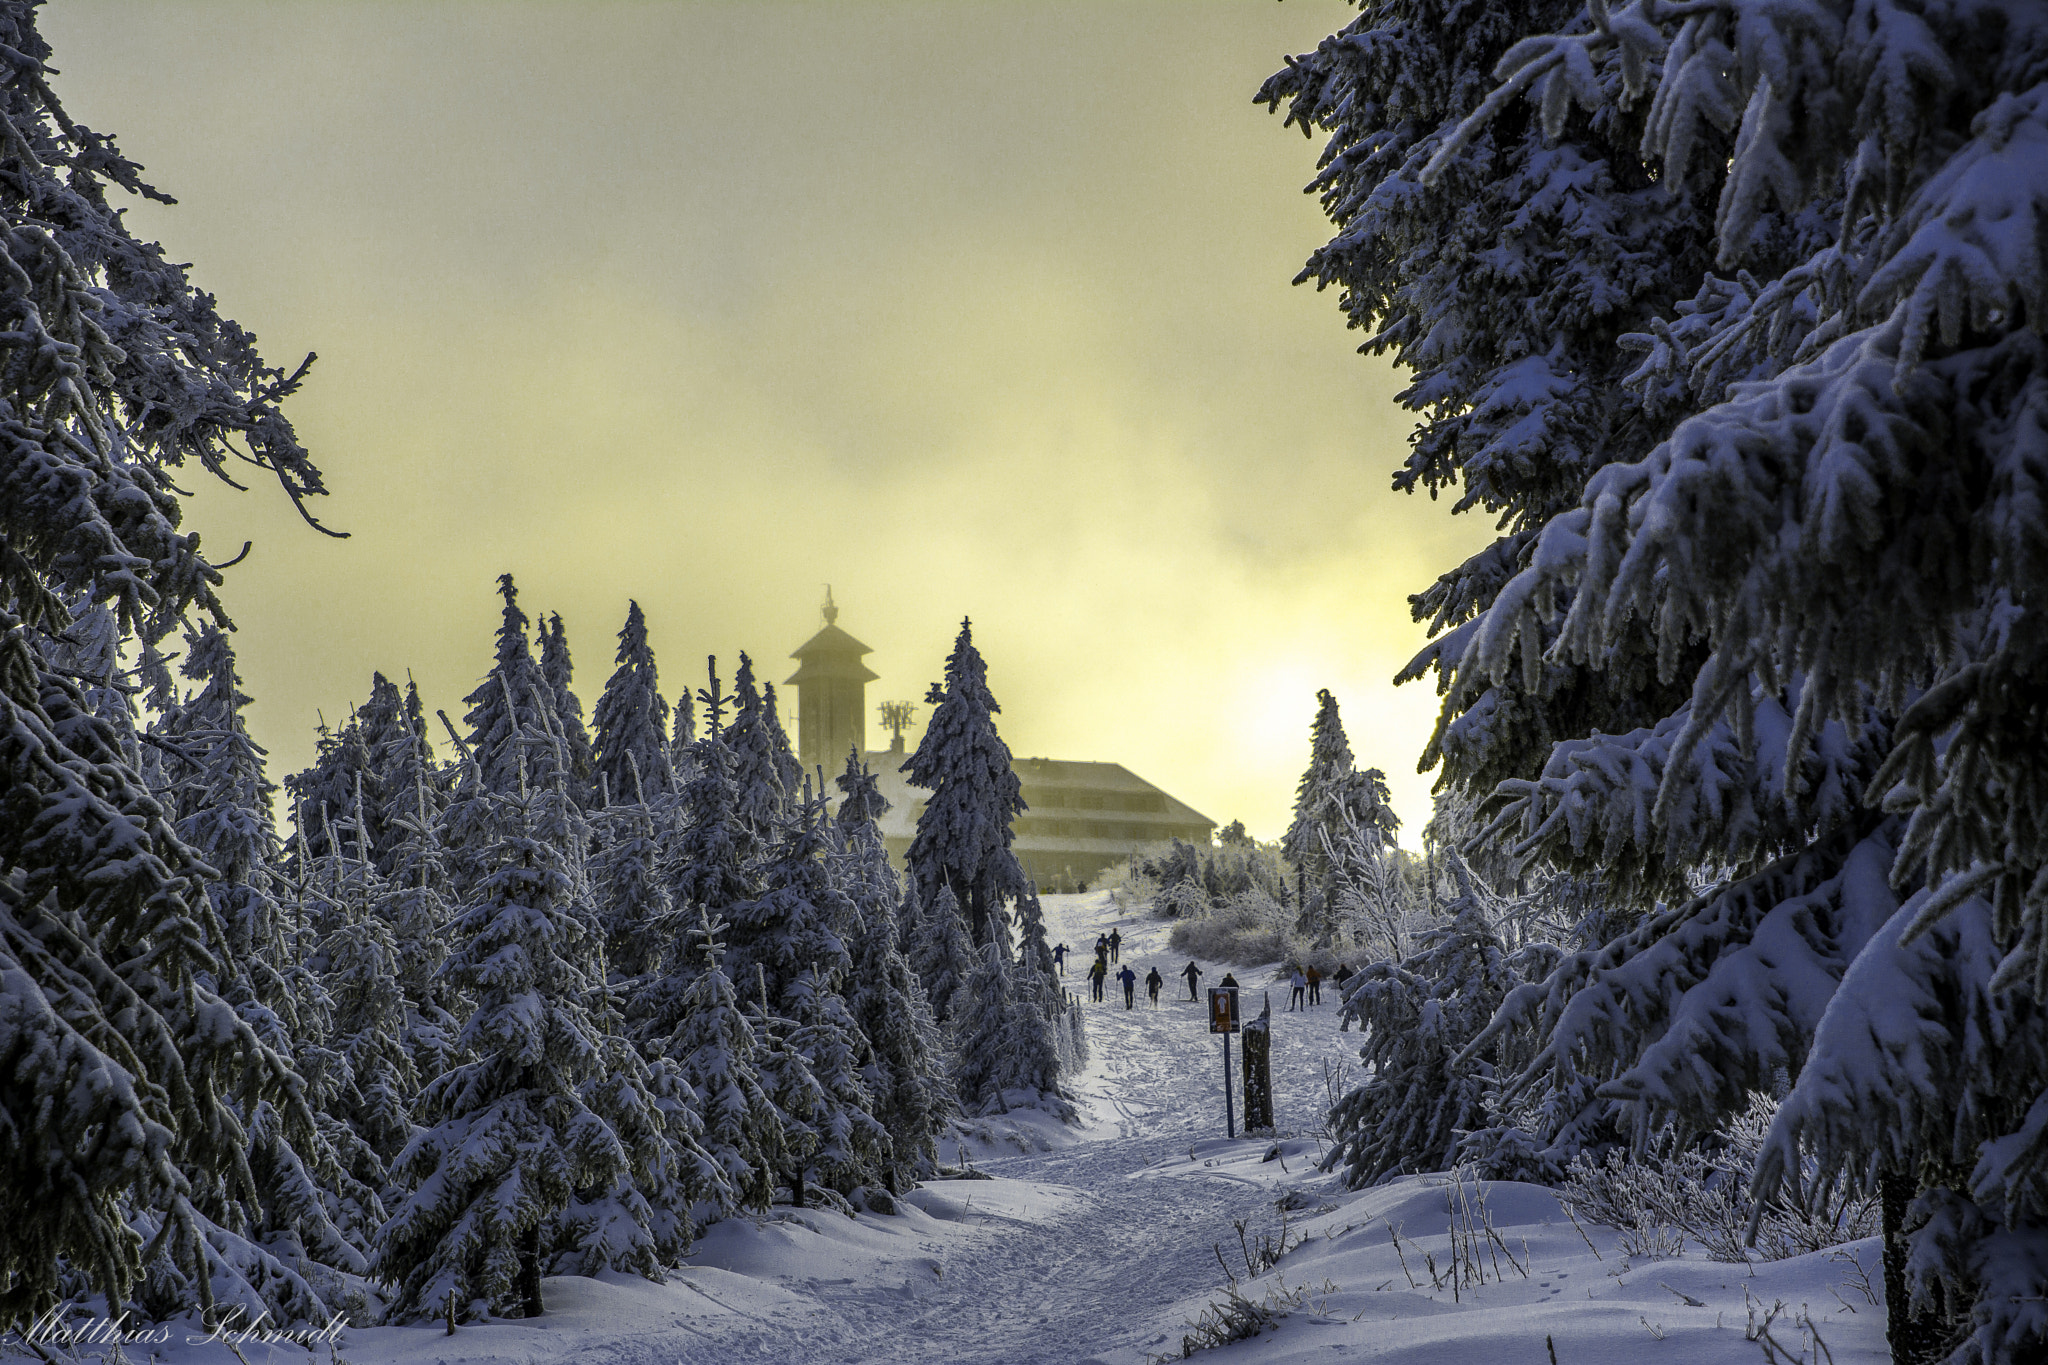 Nikon D7100 sample photo. Romantic winter landscape photography